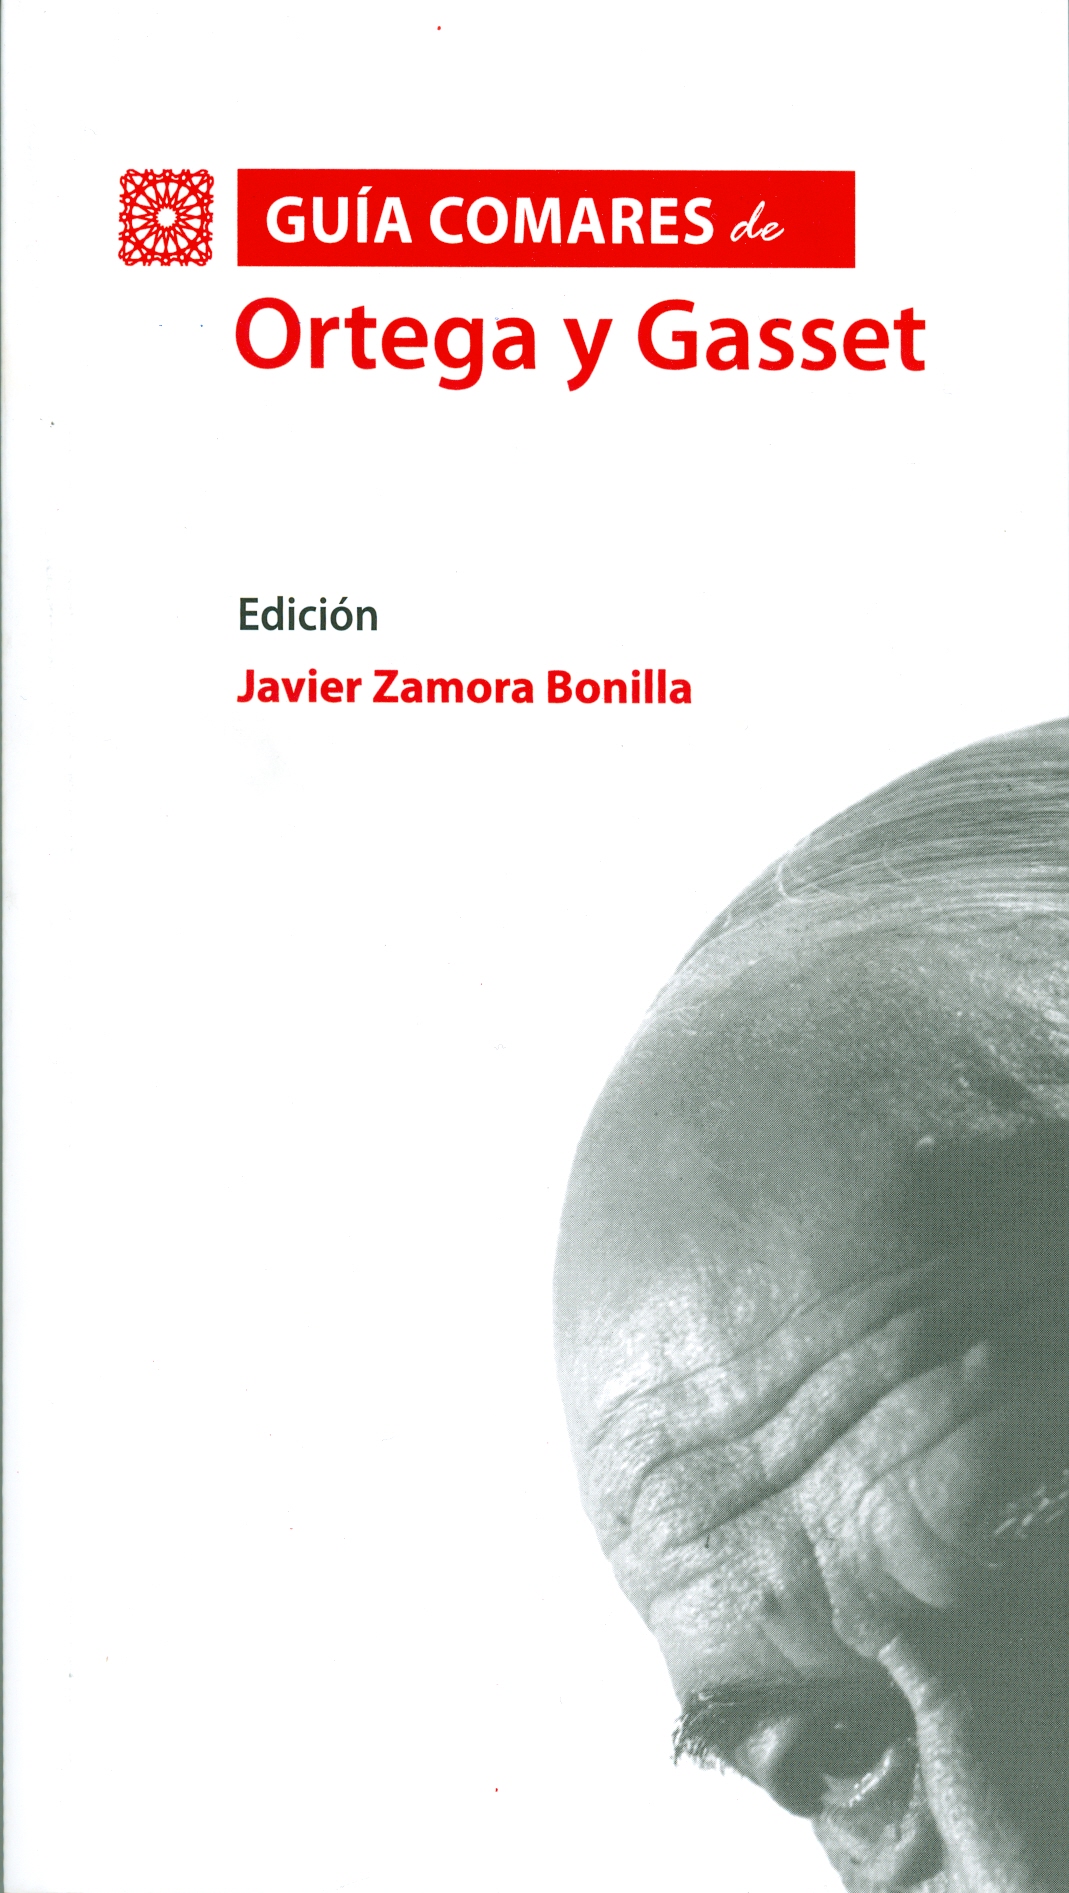 "Guía Comares de Ortega y Gasset": nuevo libro de D. Javier Zamora Bonilla, Profesor Titular del Departamento de Historia del Pensamiento y de los Movimientos Sociales y Políticos